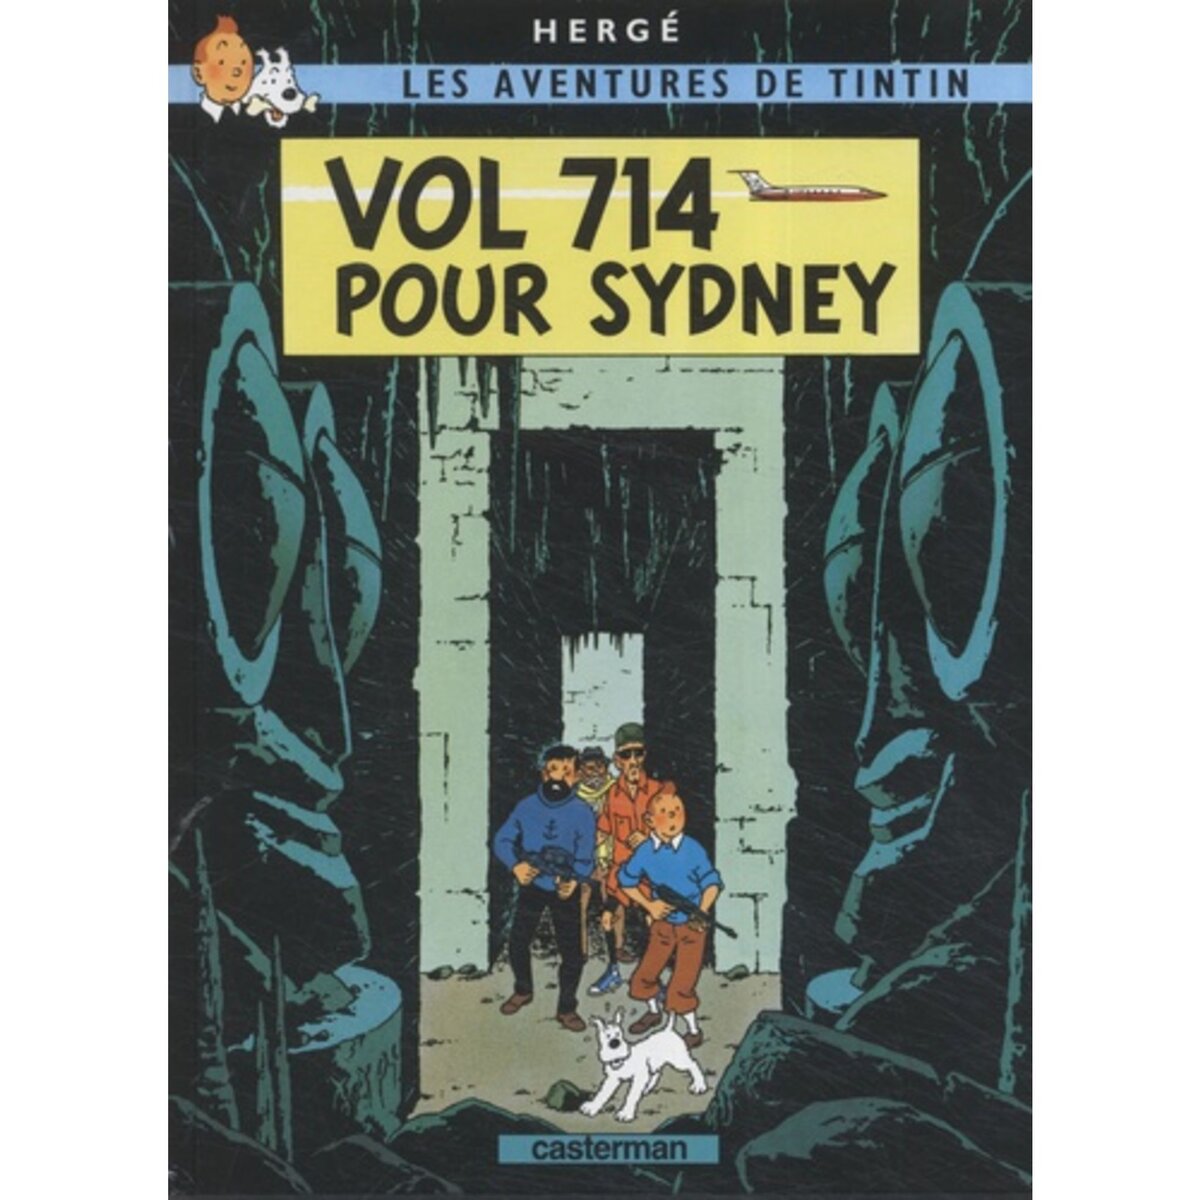 Les aventures de Tintin Tome 16 : objectif lune : Hergé